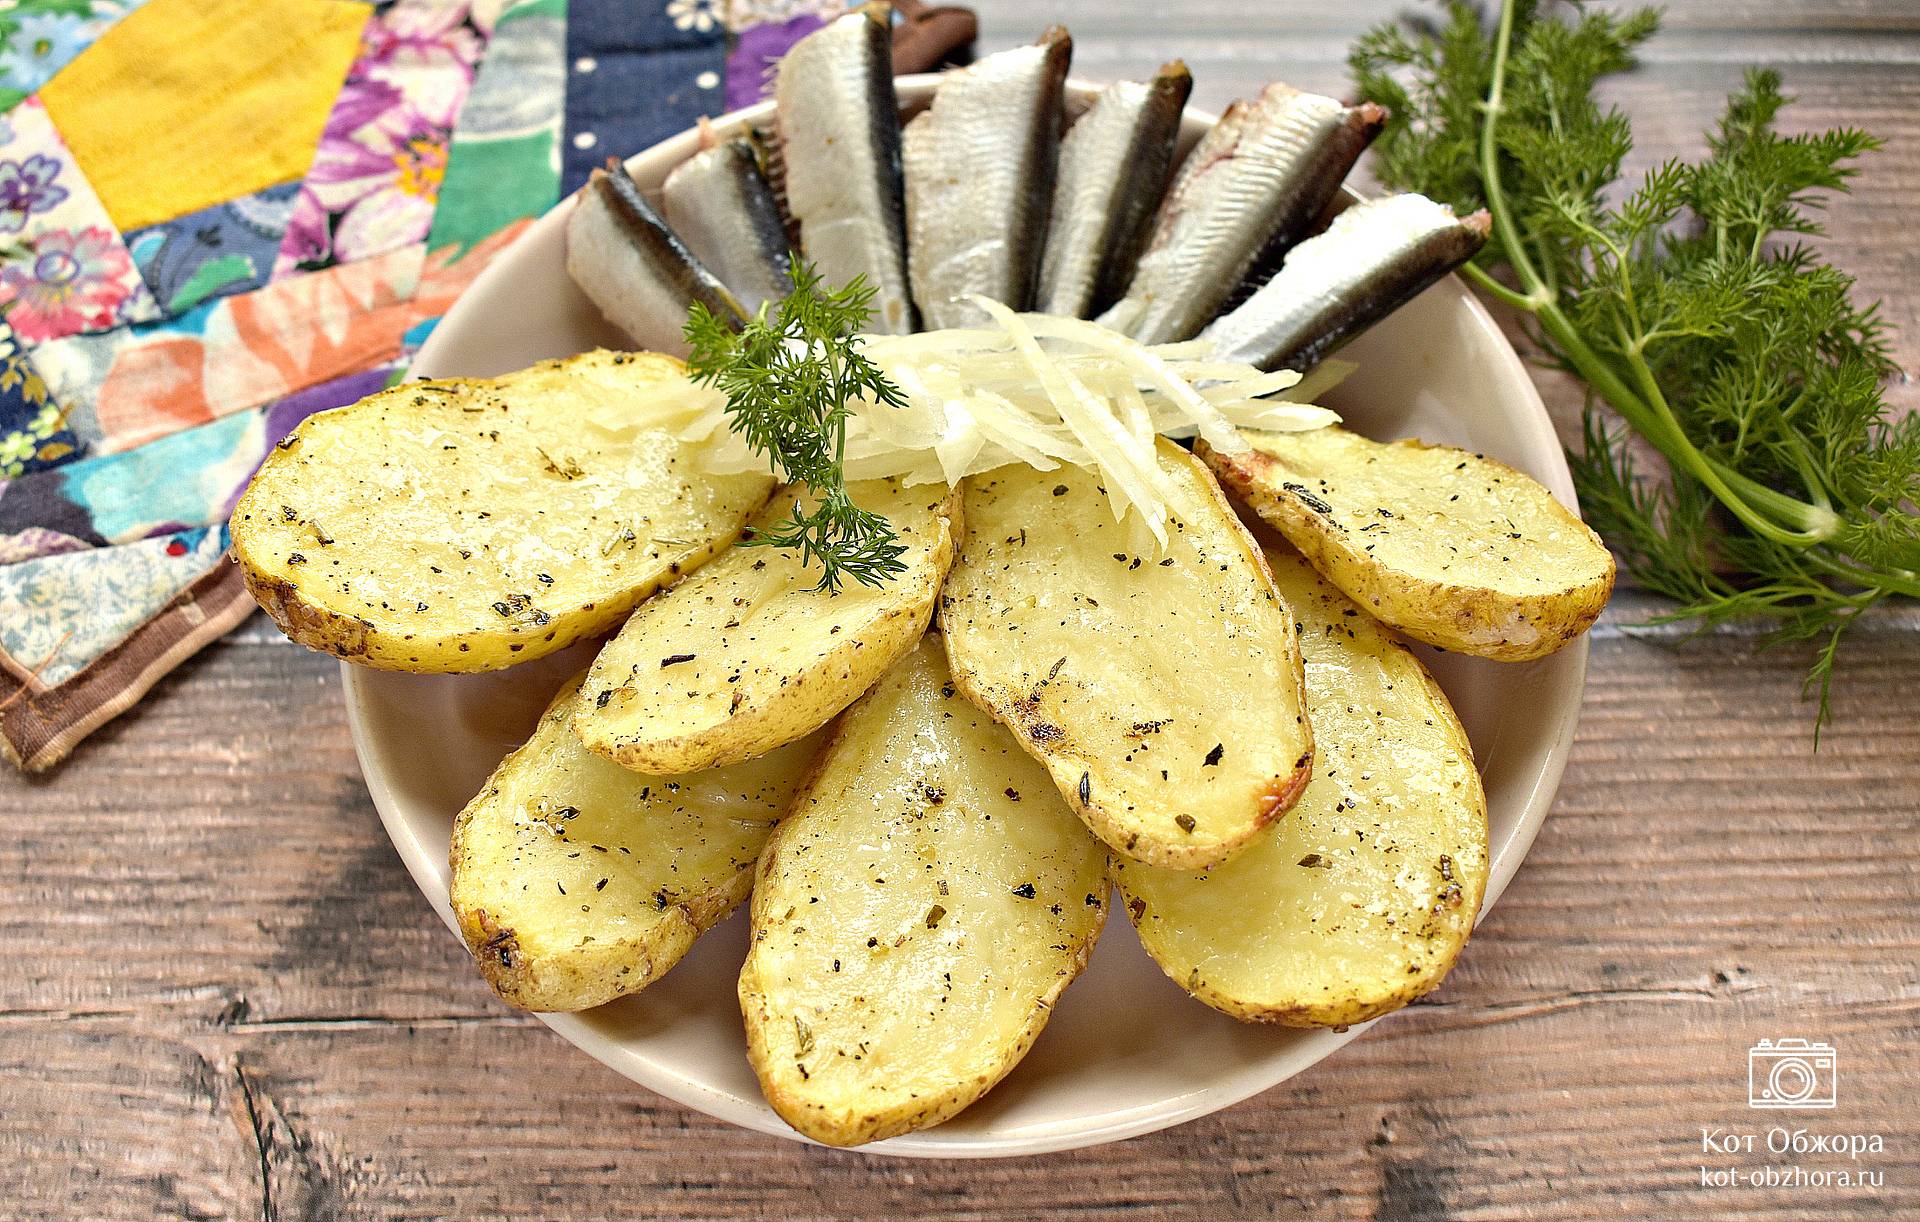 Картофель в микроволновке - рецепты с фото на tdksovremennik.ru (28 рецептов картошки в микроволновке)